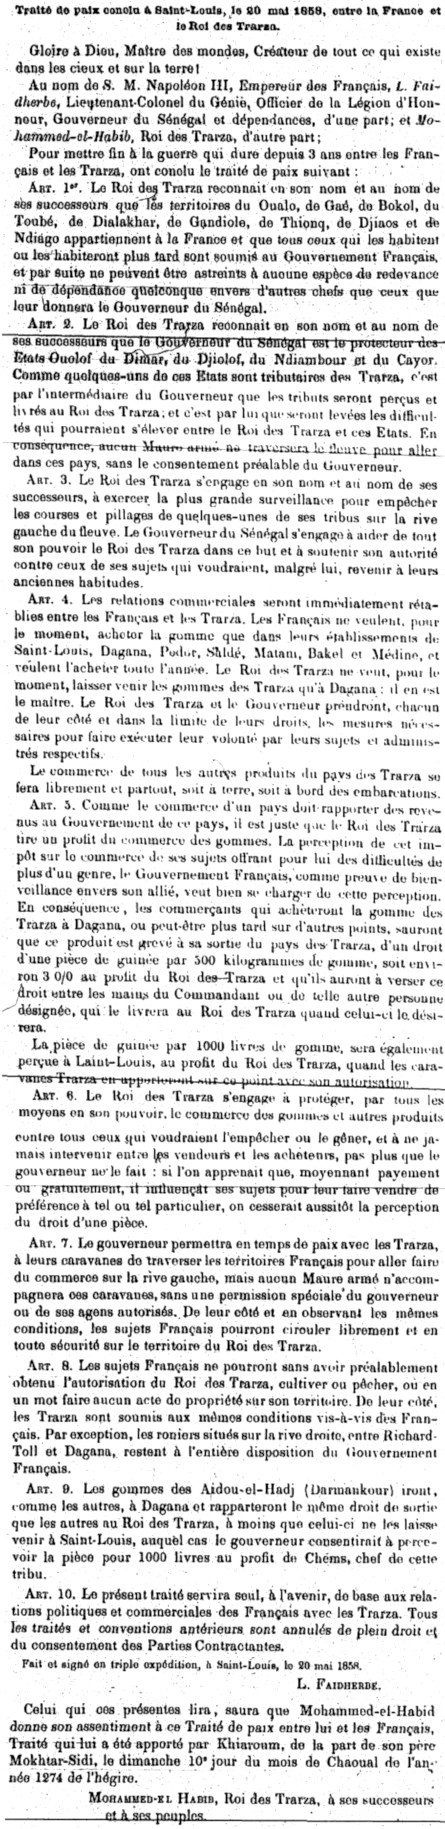 Traité de paix conclu à Saint-Louis le 20 mai 1858 entre la France et le Roi des Trarza.